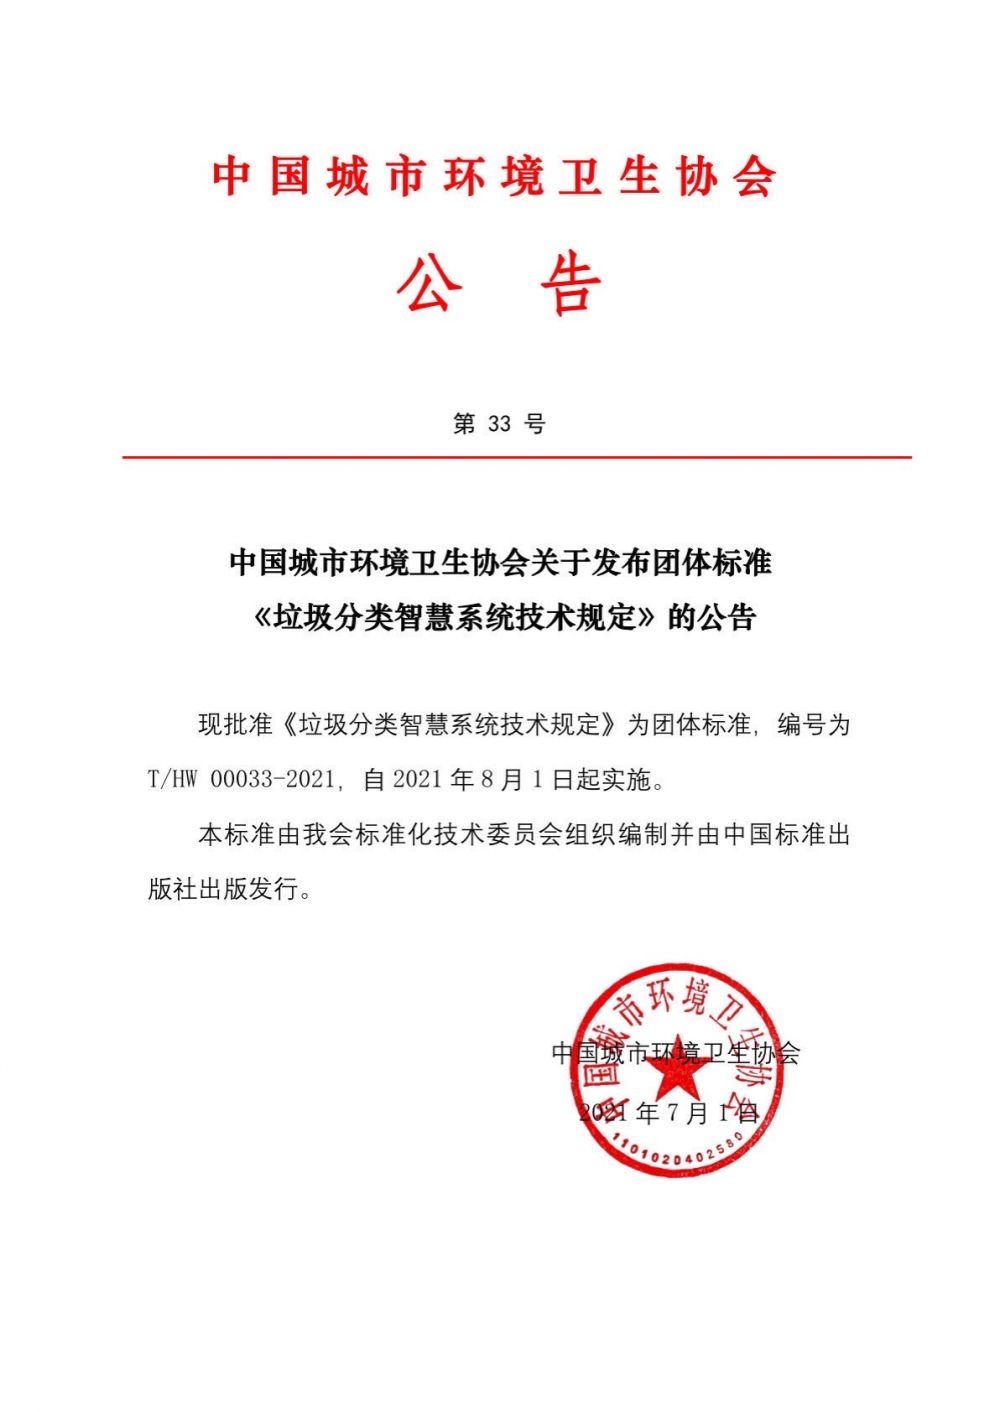 公告第33号中国城市环境卫生协会关于发布团体标准《垃圾分类智慧系统技术规定》的公告.jpg